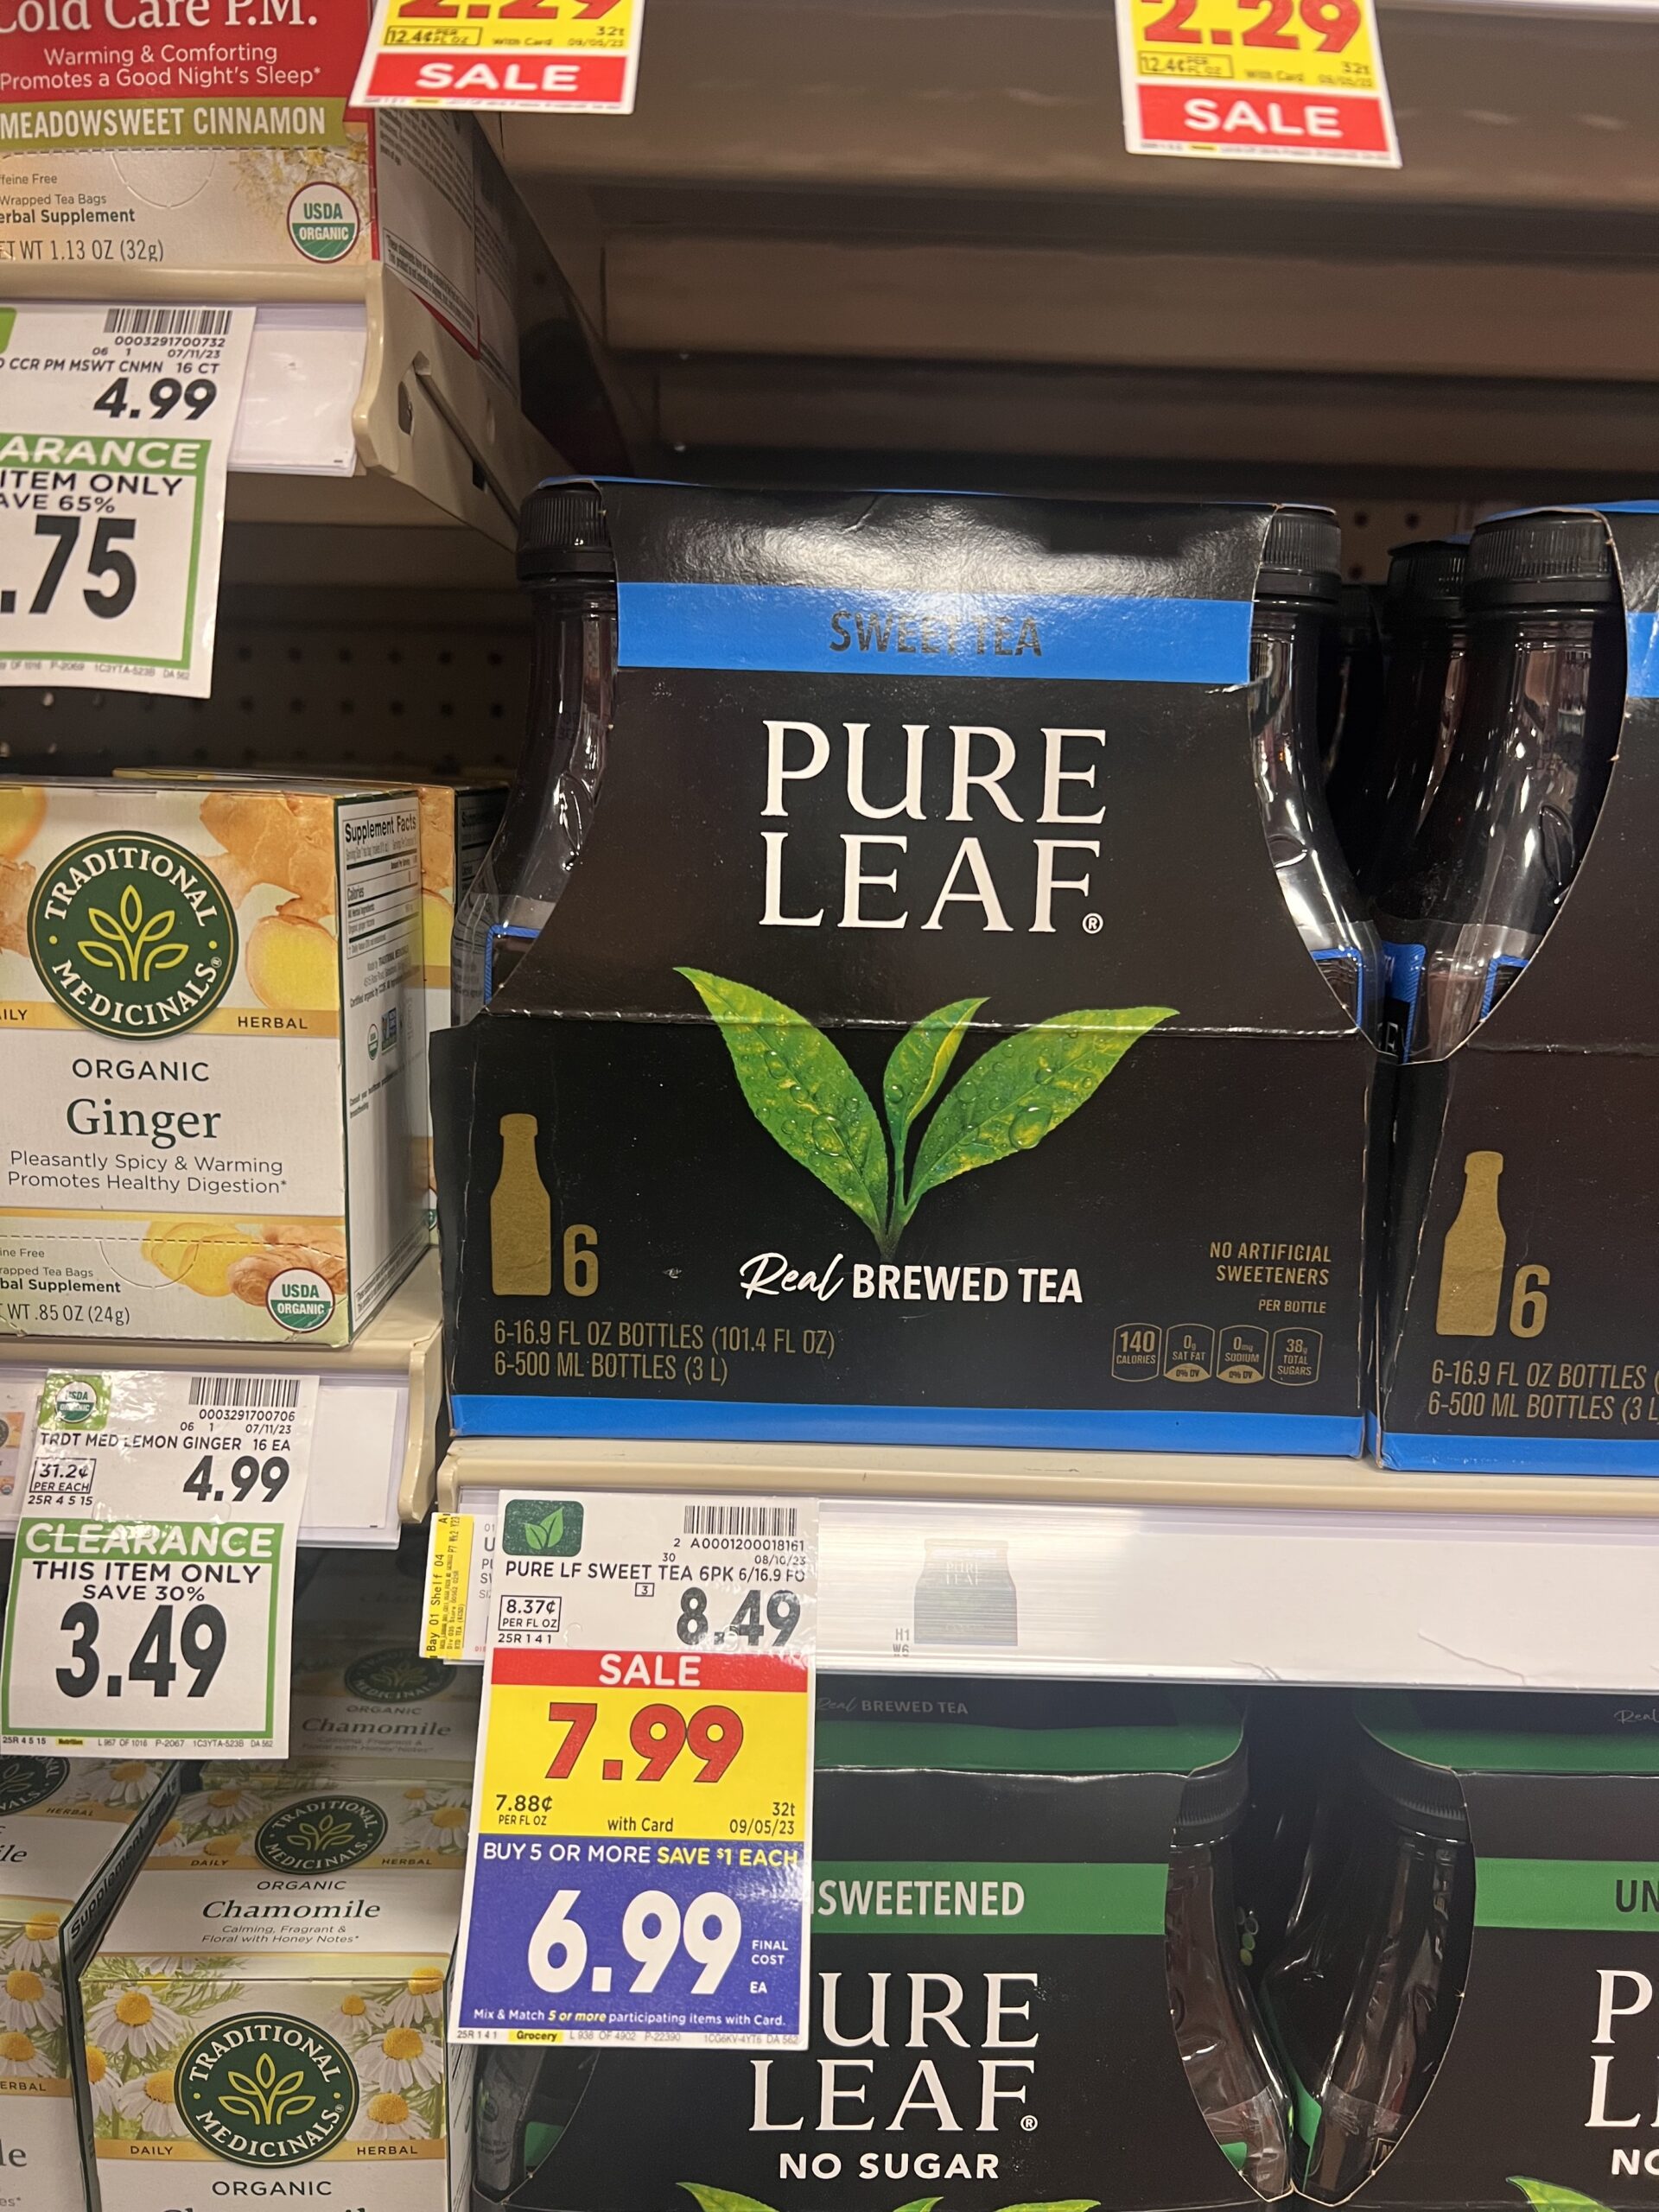 pure leaf kroger shelf image 1